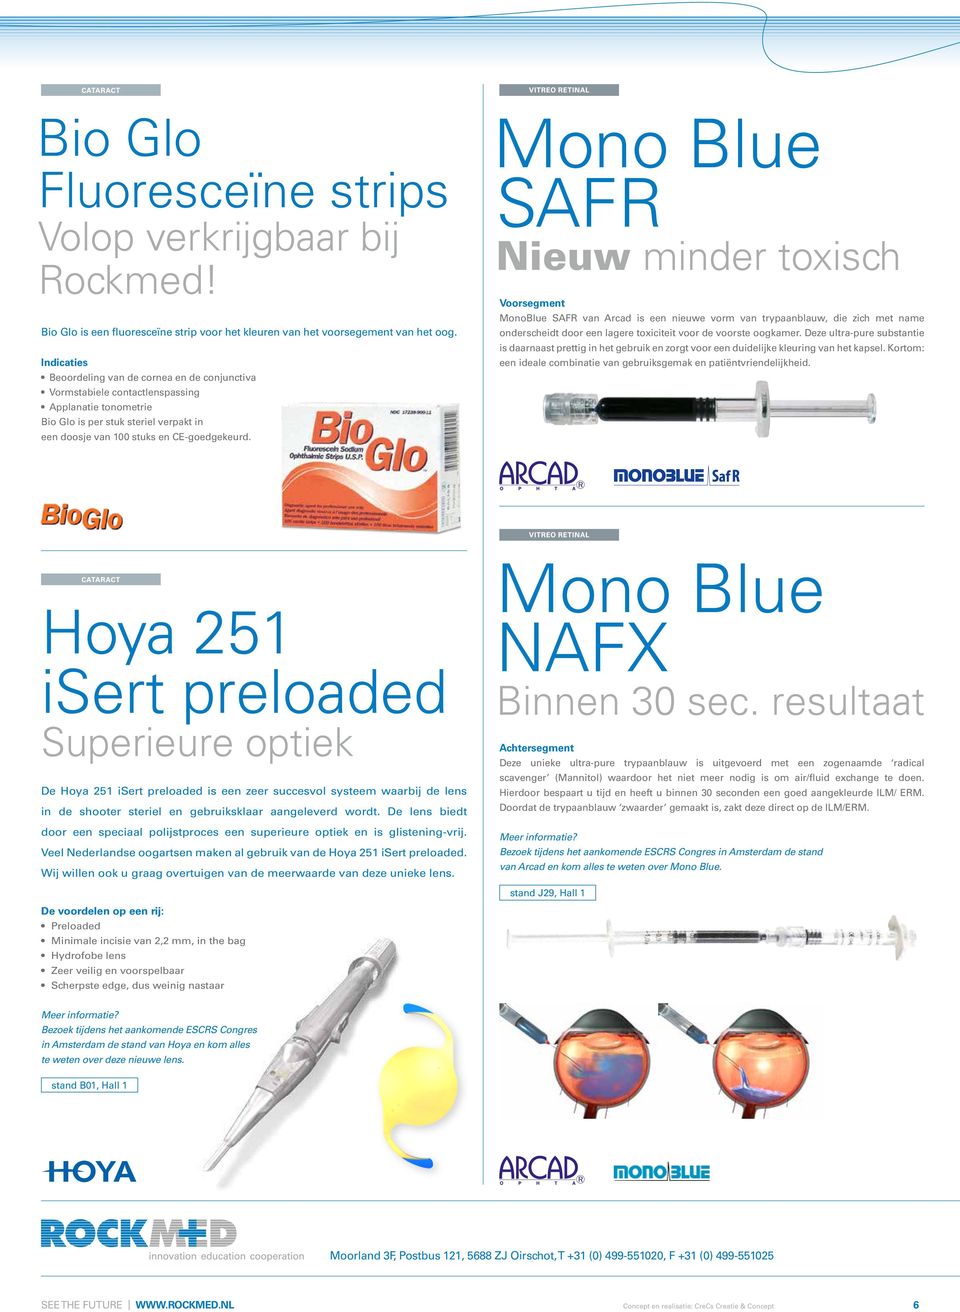 Mono Blue SAFR Nieuw minder toxisch Voorsegment MonoBlue SAFR van Arcad is een nieuwe vorm van trypaanblauw, die zich met name onderscheidt door een lagere toxiciteit voor de voorste oogkamer.